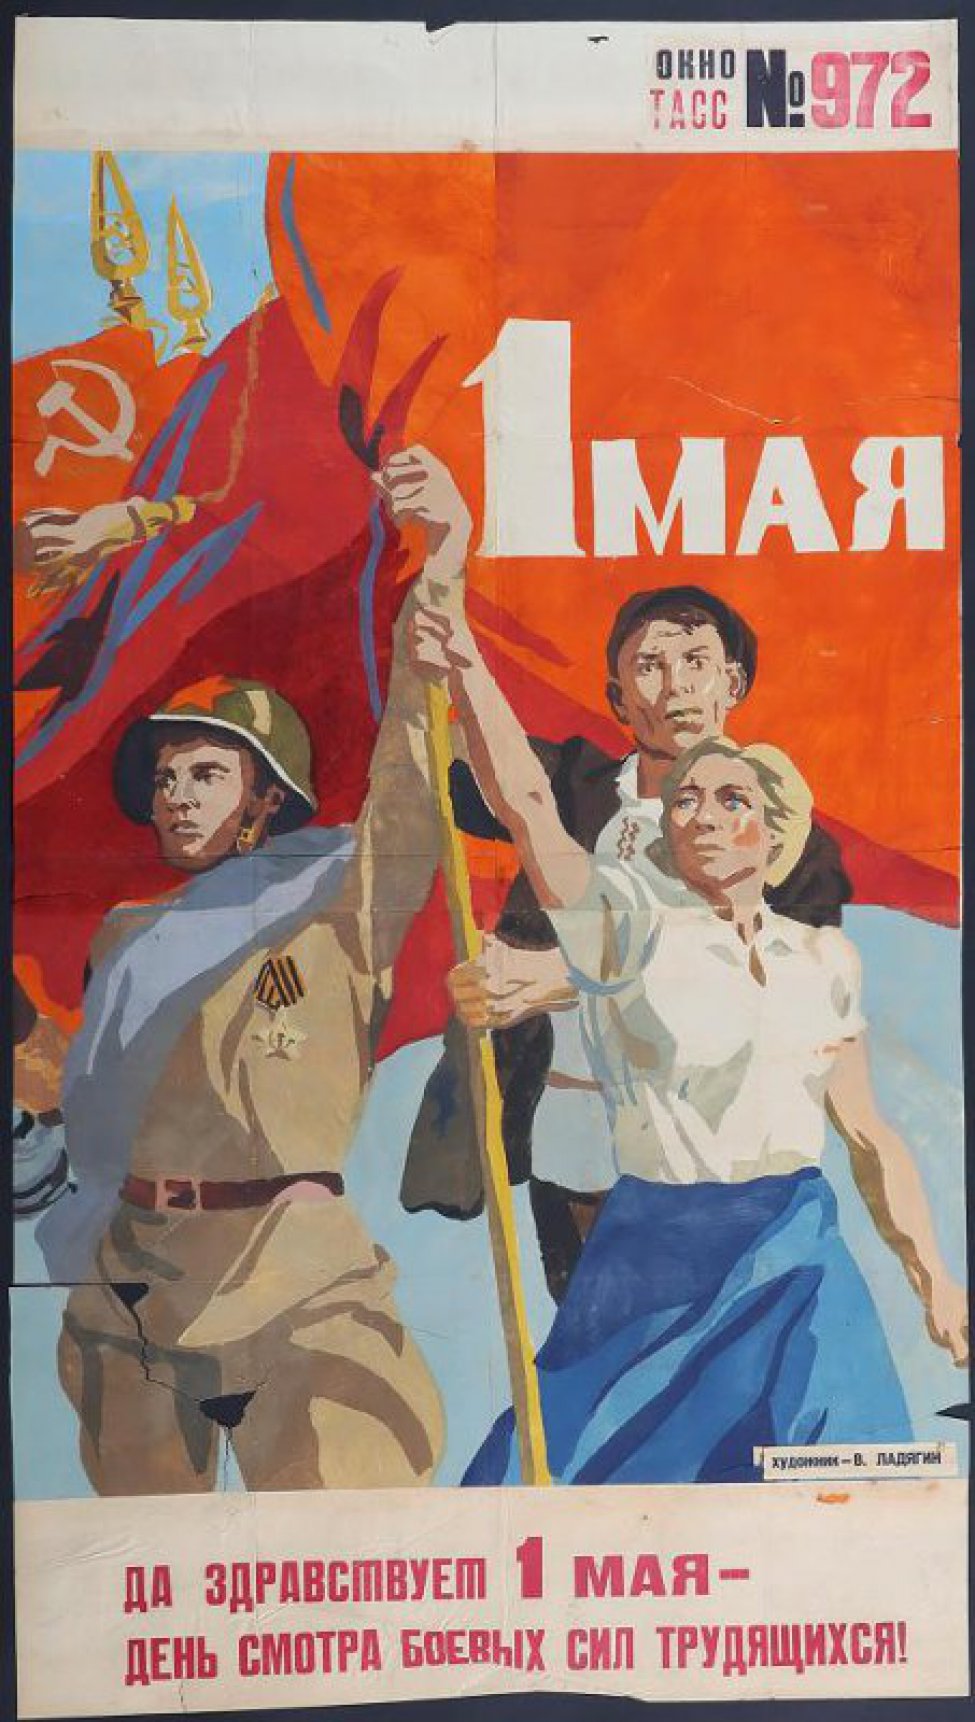 Изображено: боец советской армии, девушка и молодой человек держат Красное Знамя, текст:" да здравствует 1 мая, день смотра  об... сил трудящихся!".